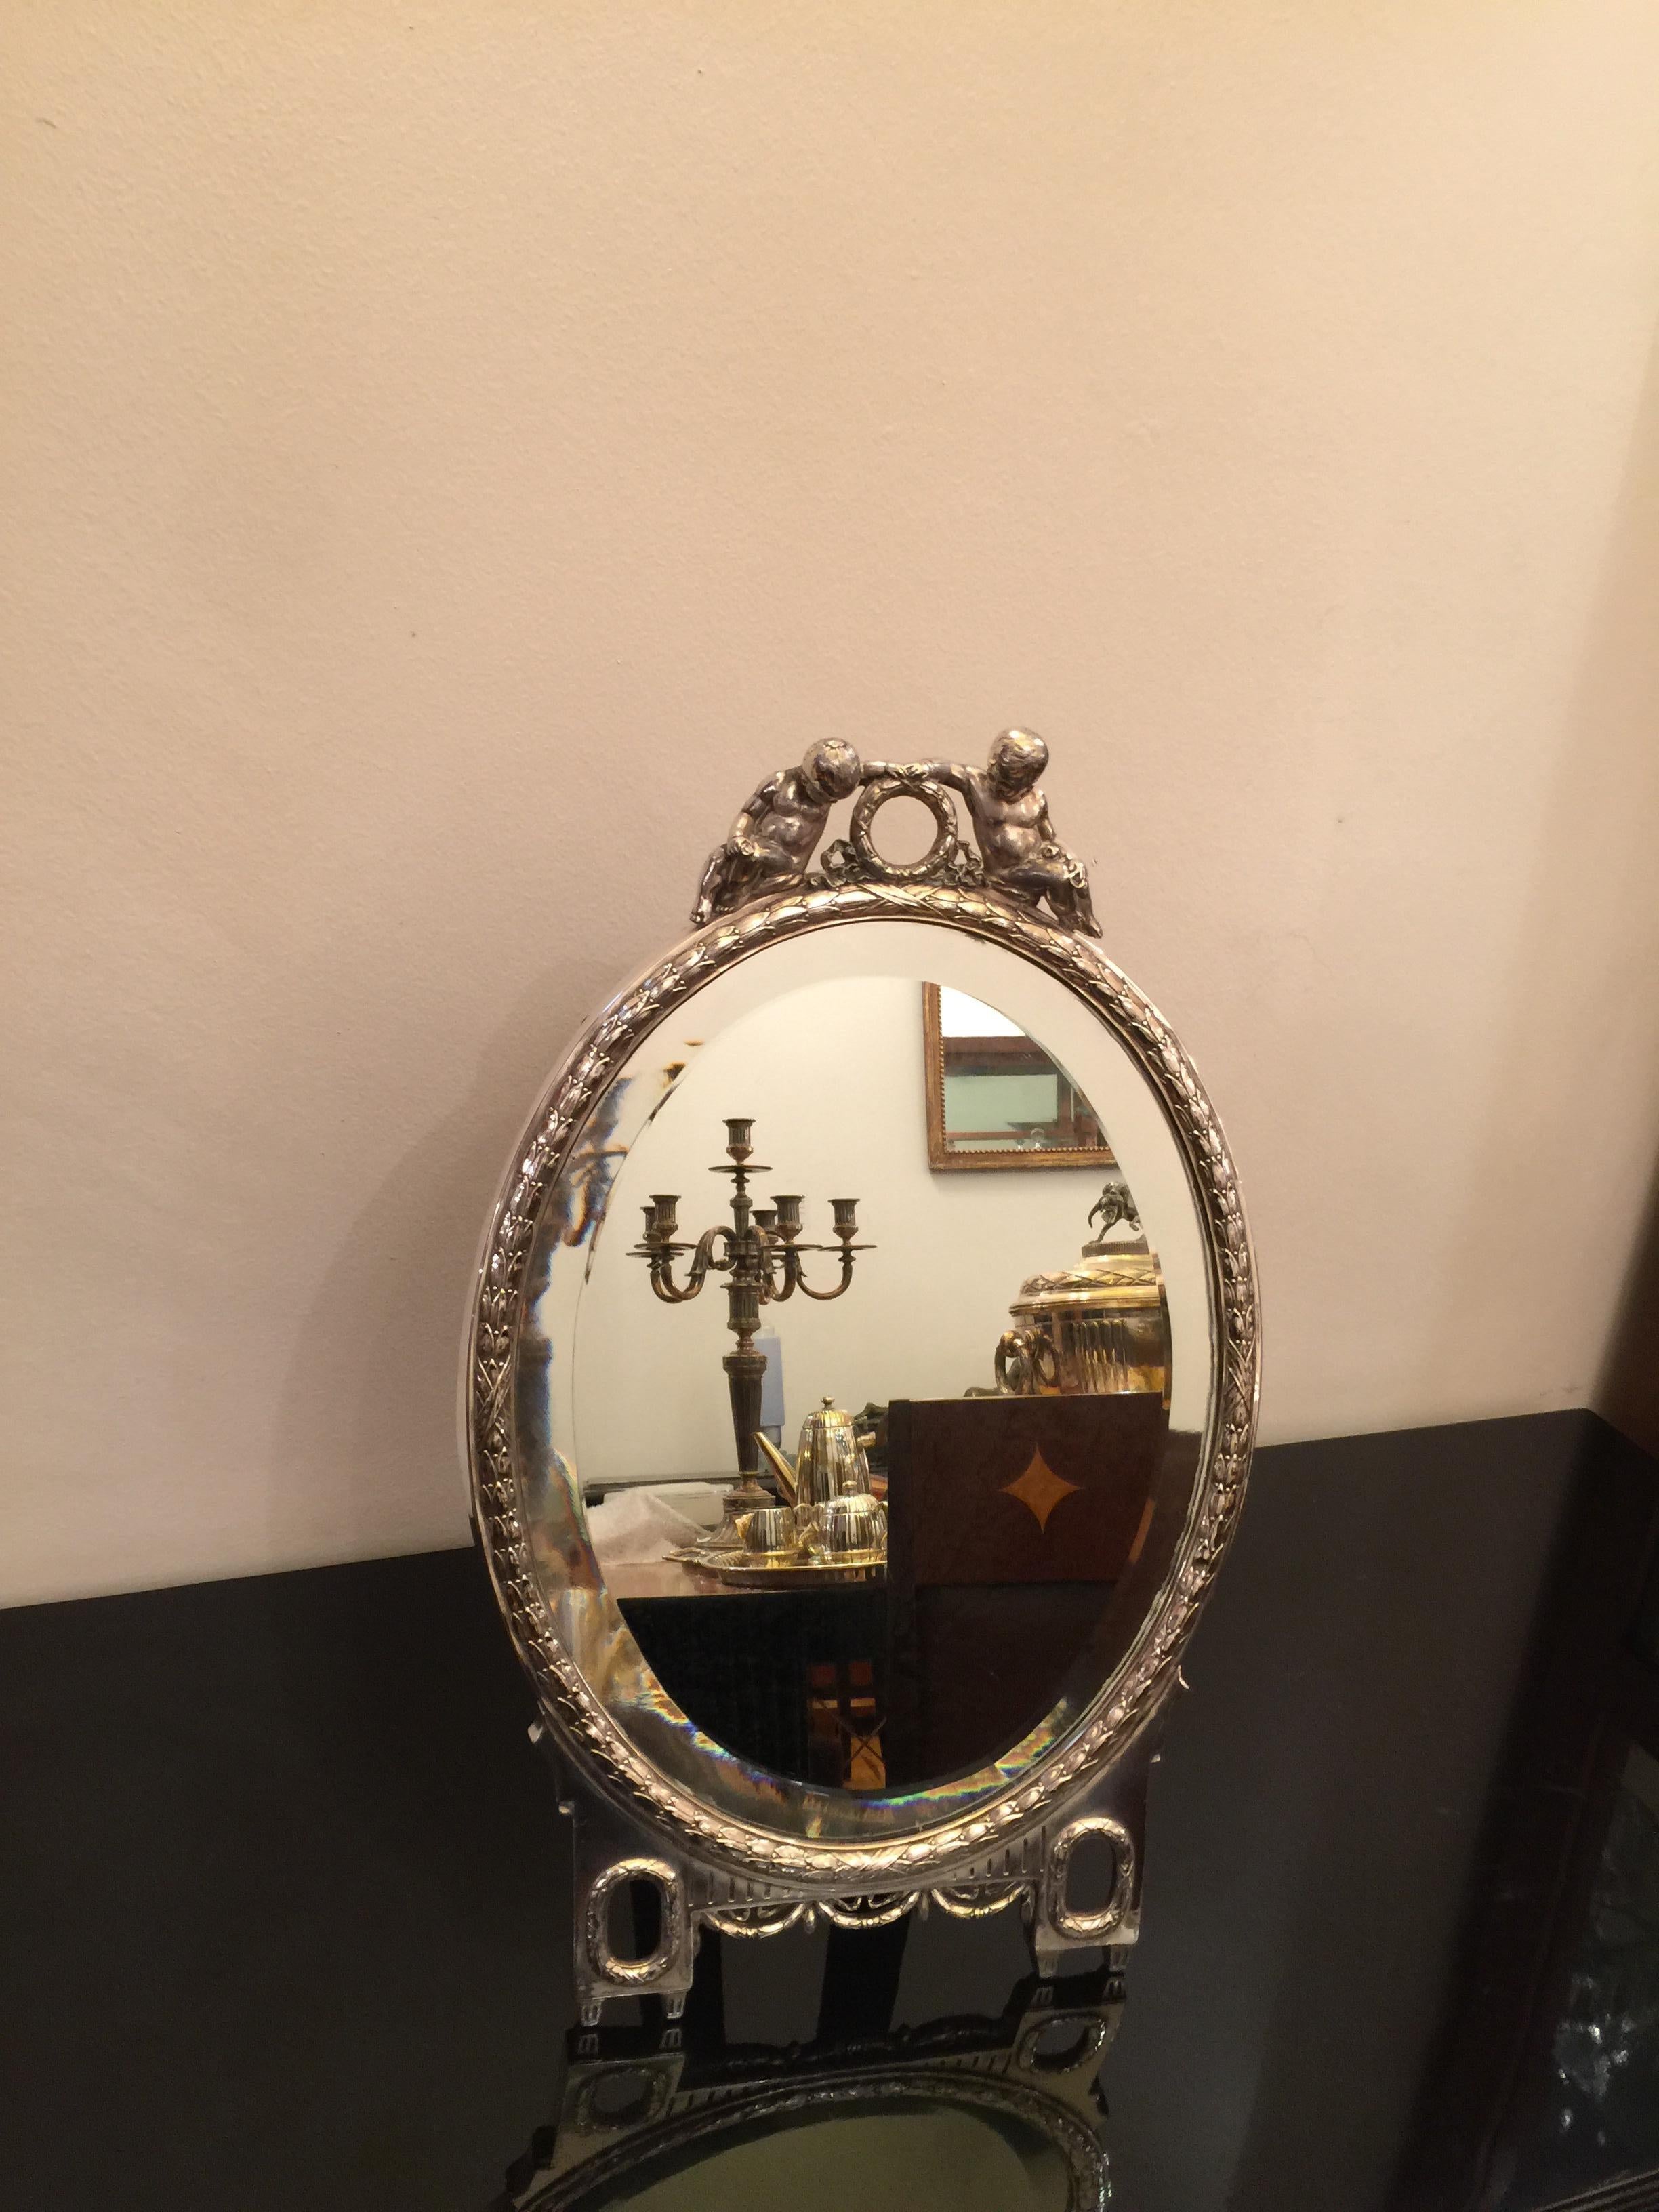  Signature du miroir : WMF, Année : 1910, Jugendstil, Art nouveau, Liberté, Allemagne en vente 2